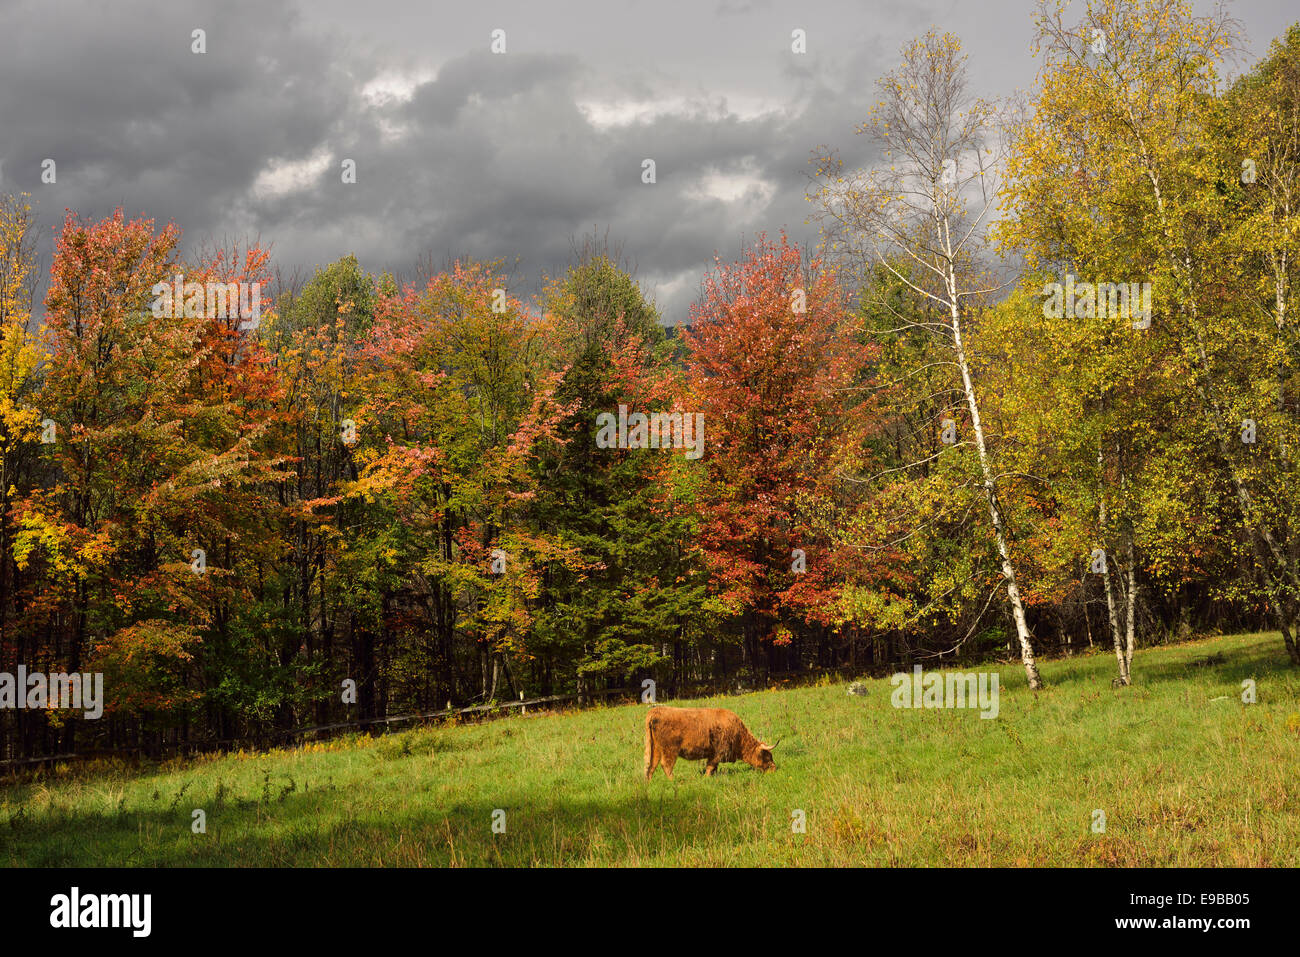 Highland el pastoreo del ganado en pastizales rodeados por colores de otoño trapp hill road Stowe, Vermont, EE.UU. Foto de stock